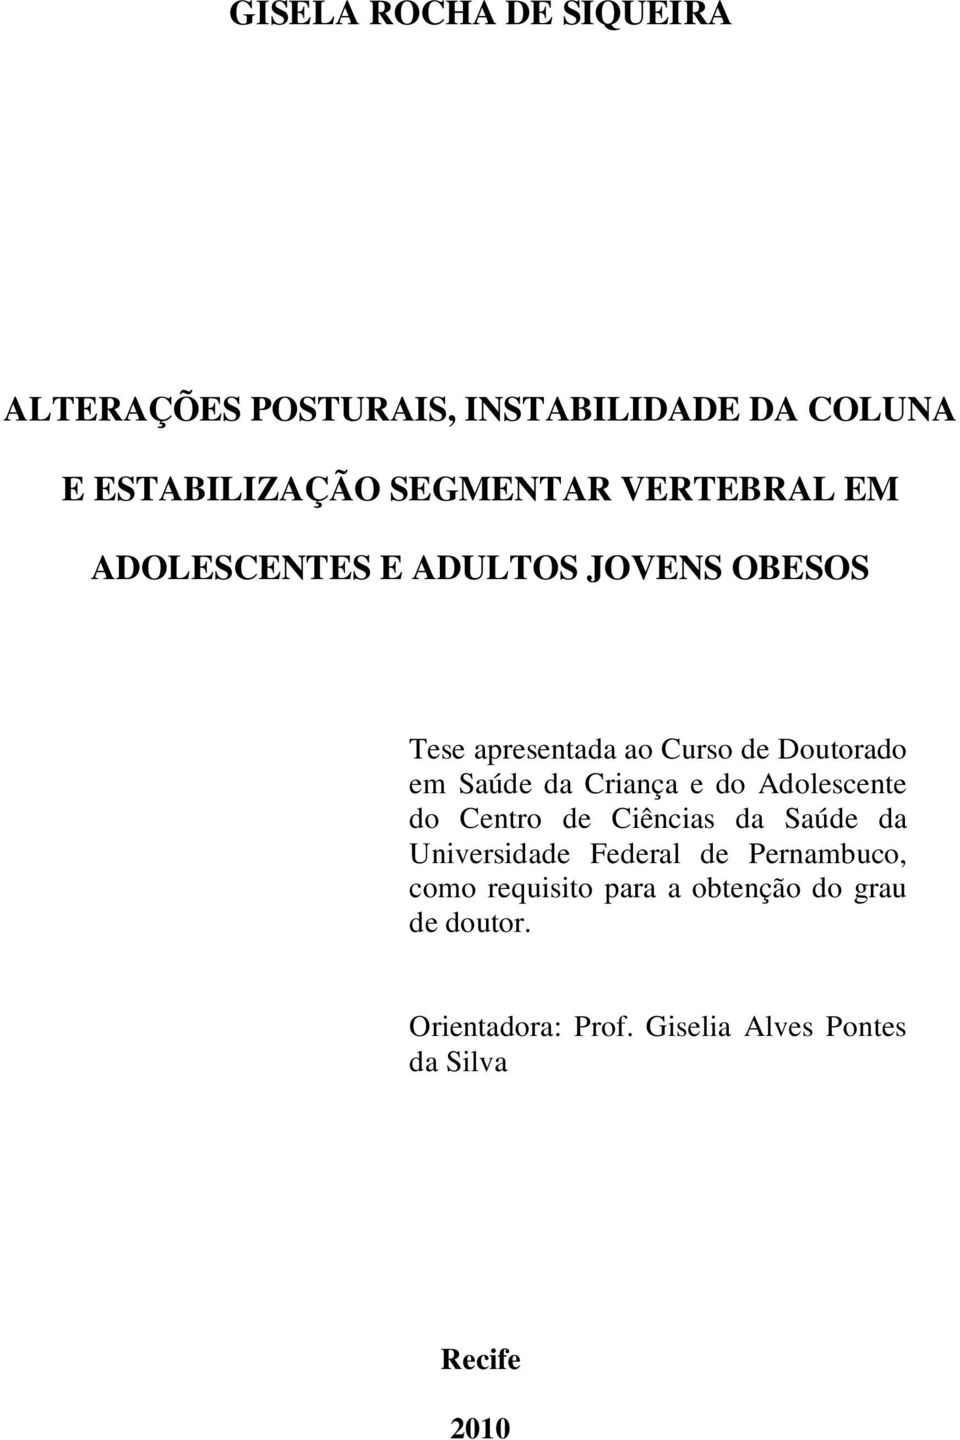 Criança e do Adolescente do Centro de Ciências da Saúde da Universidade Federal de Pernambuco, como